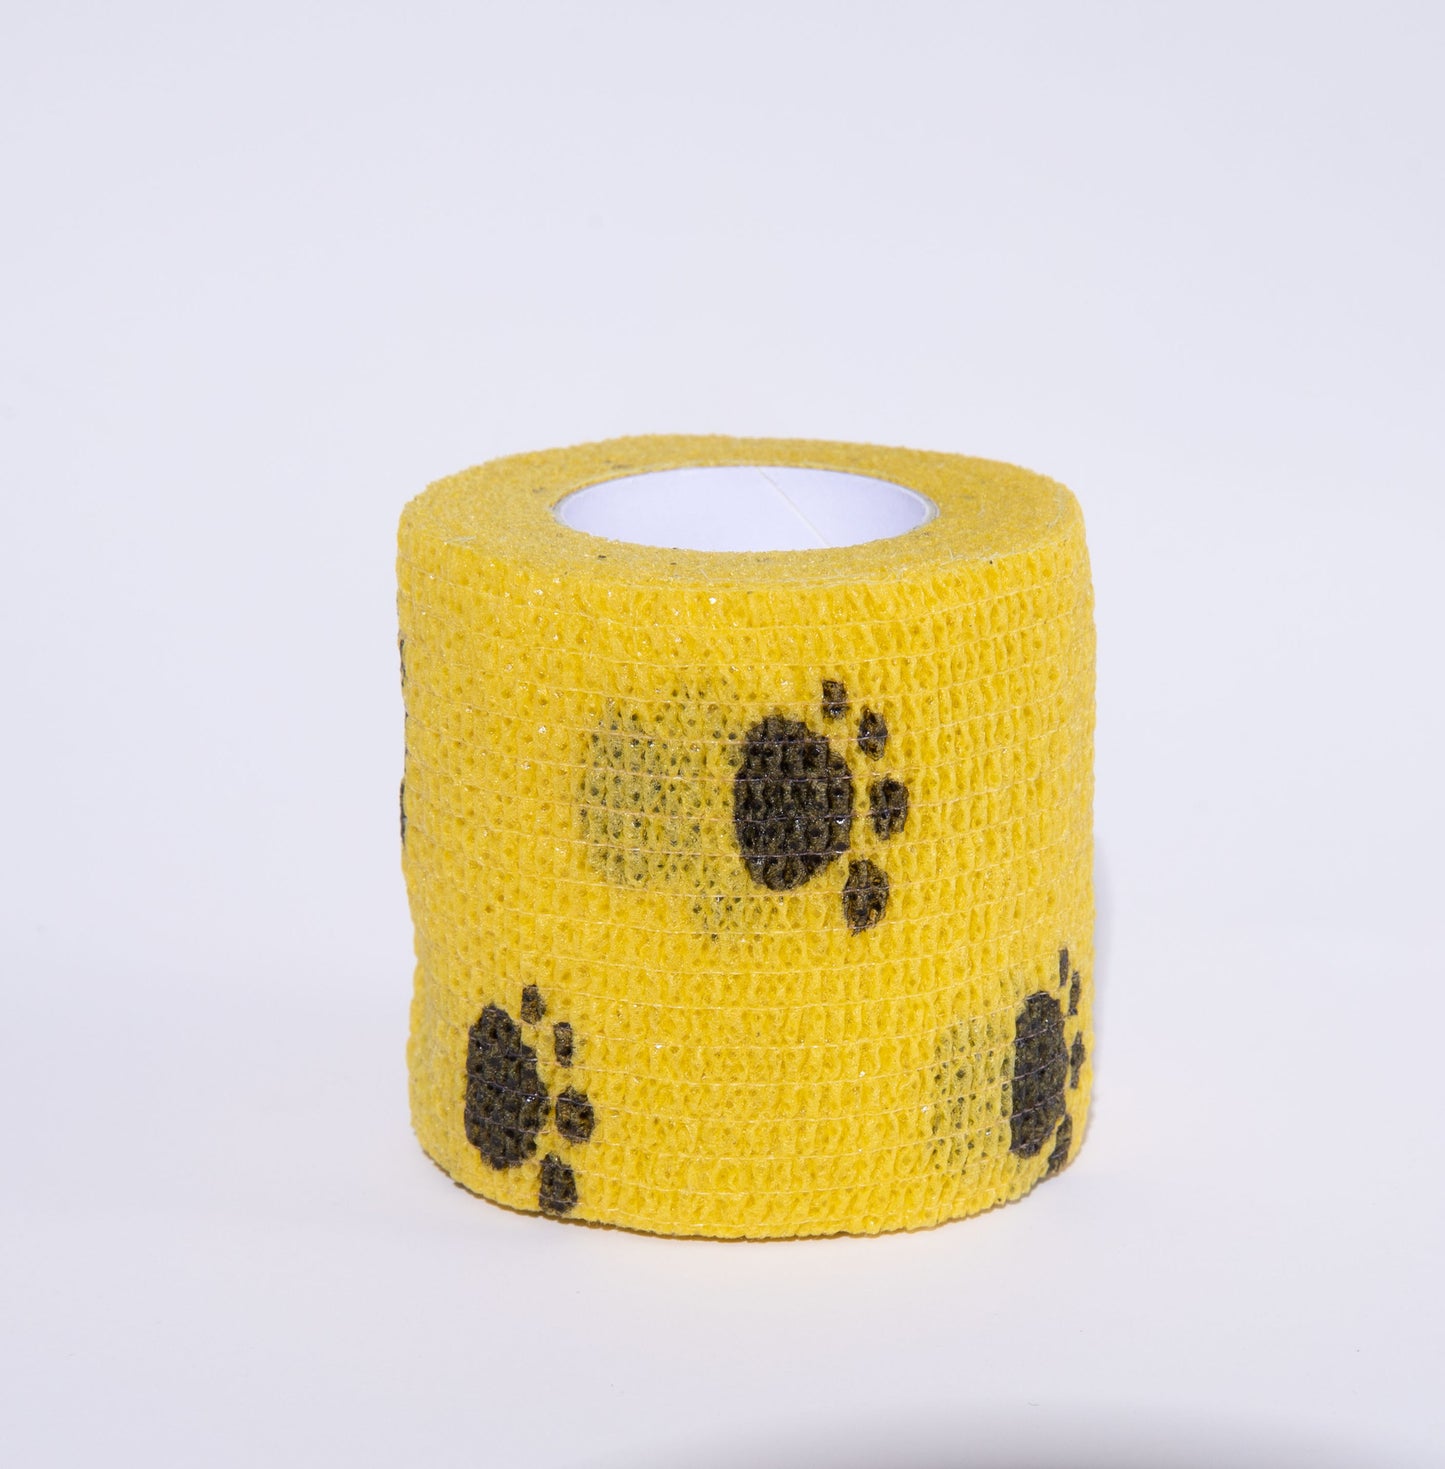 PawGuard Printed Pet Bandage